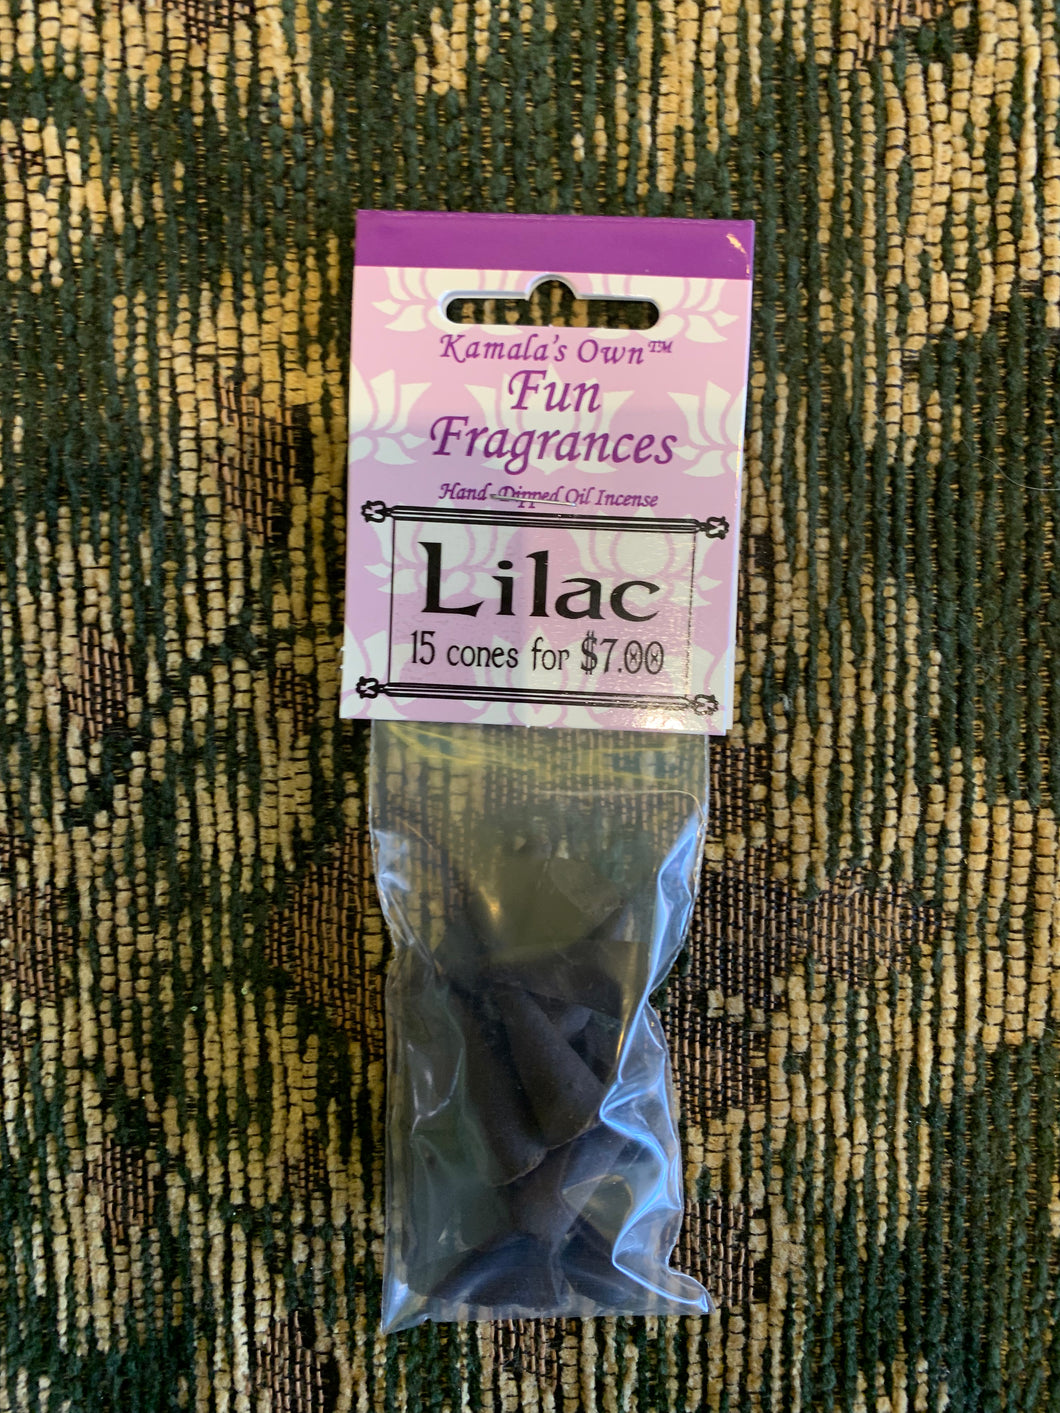 Lilac incense cones